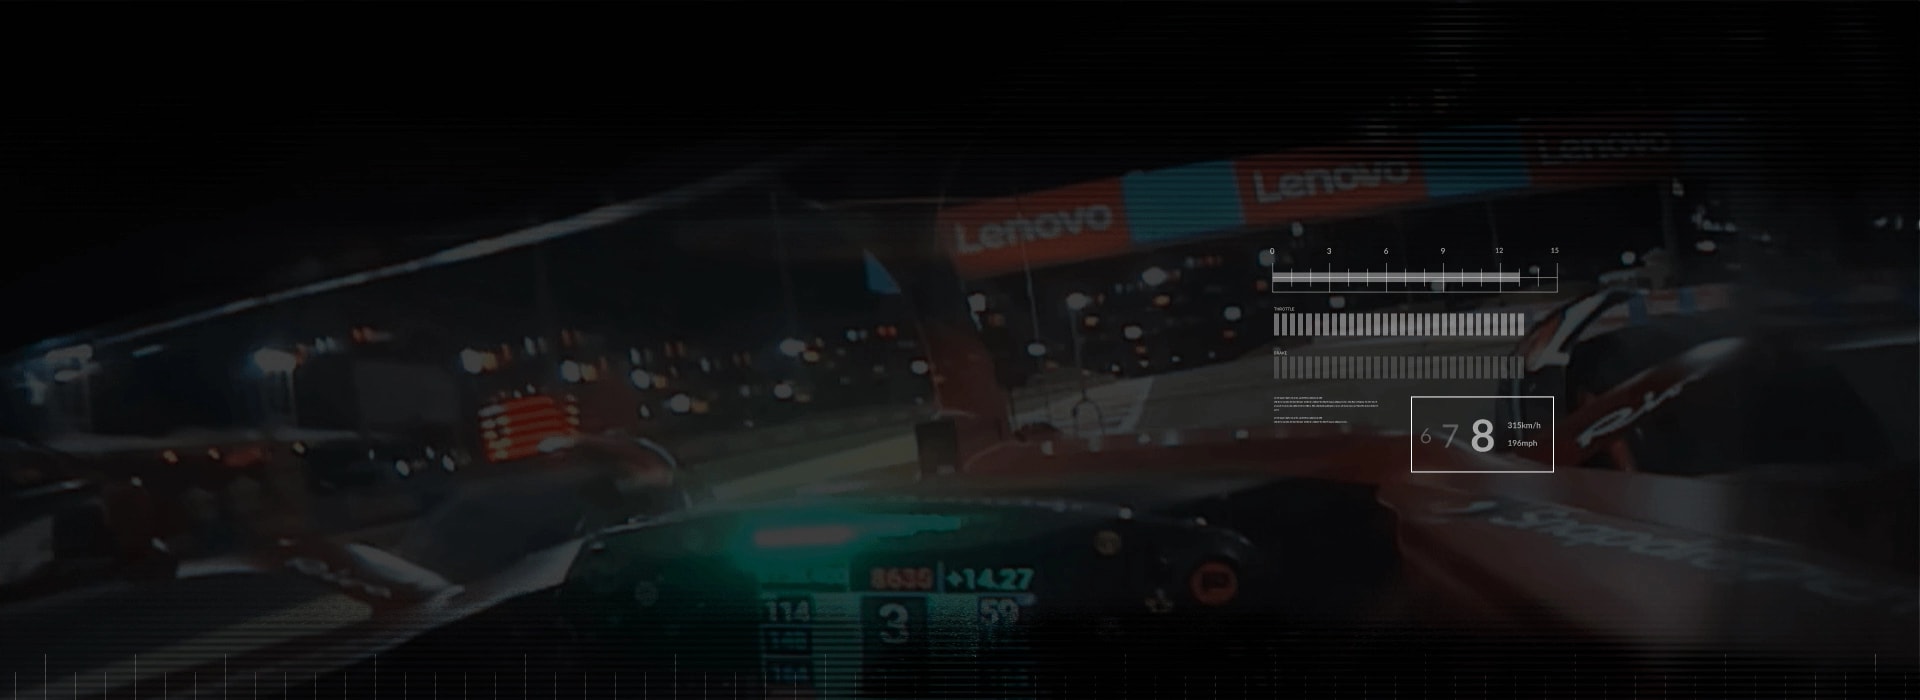 Vnitřní perspektiva závodního jezdce F1 míjejícího bannery Lenovo na trati